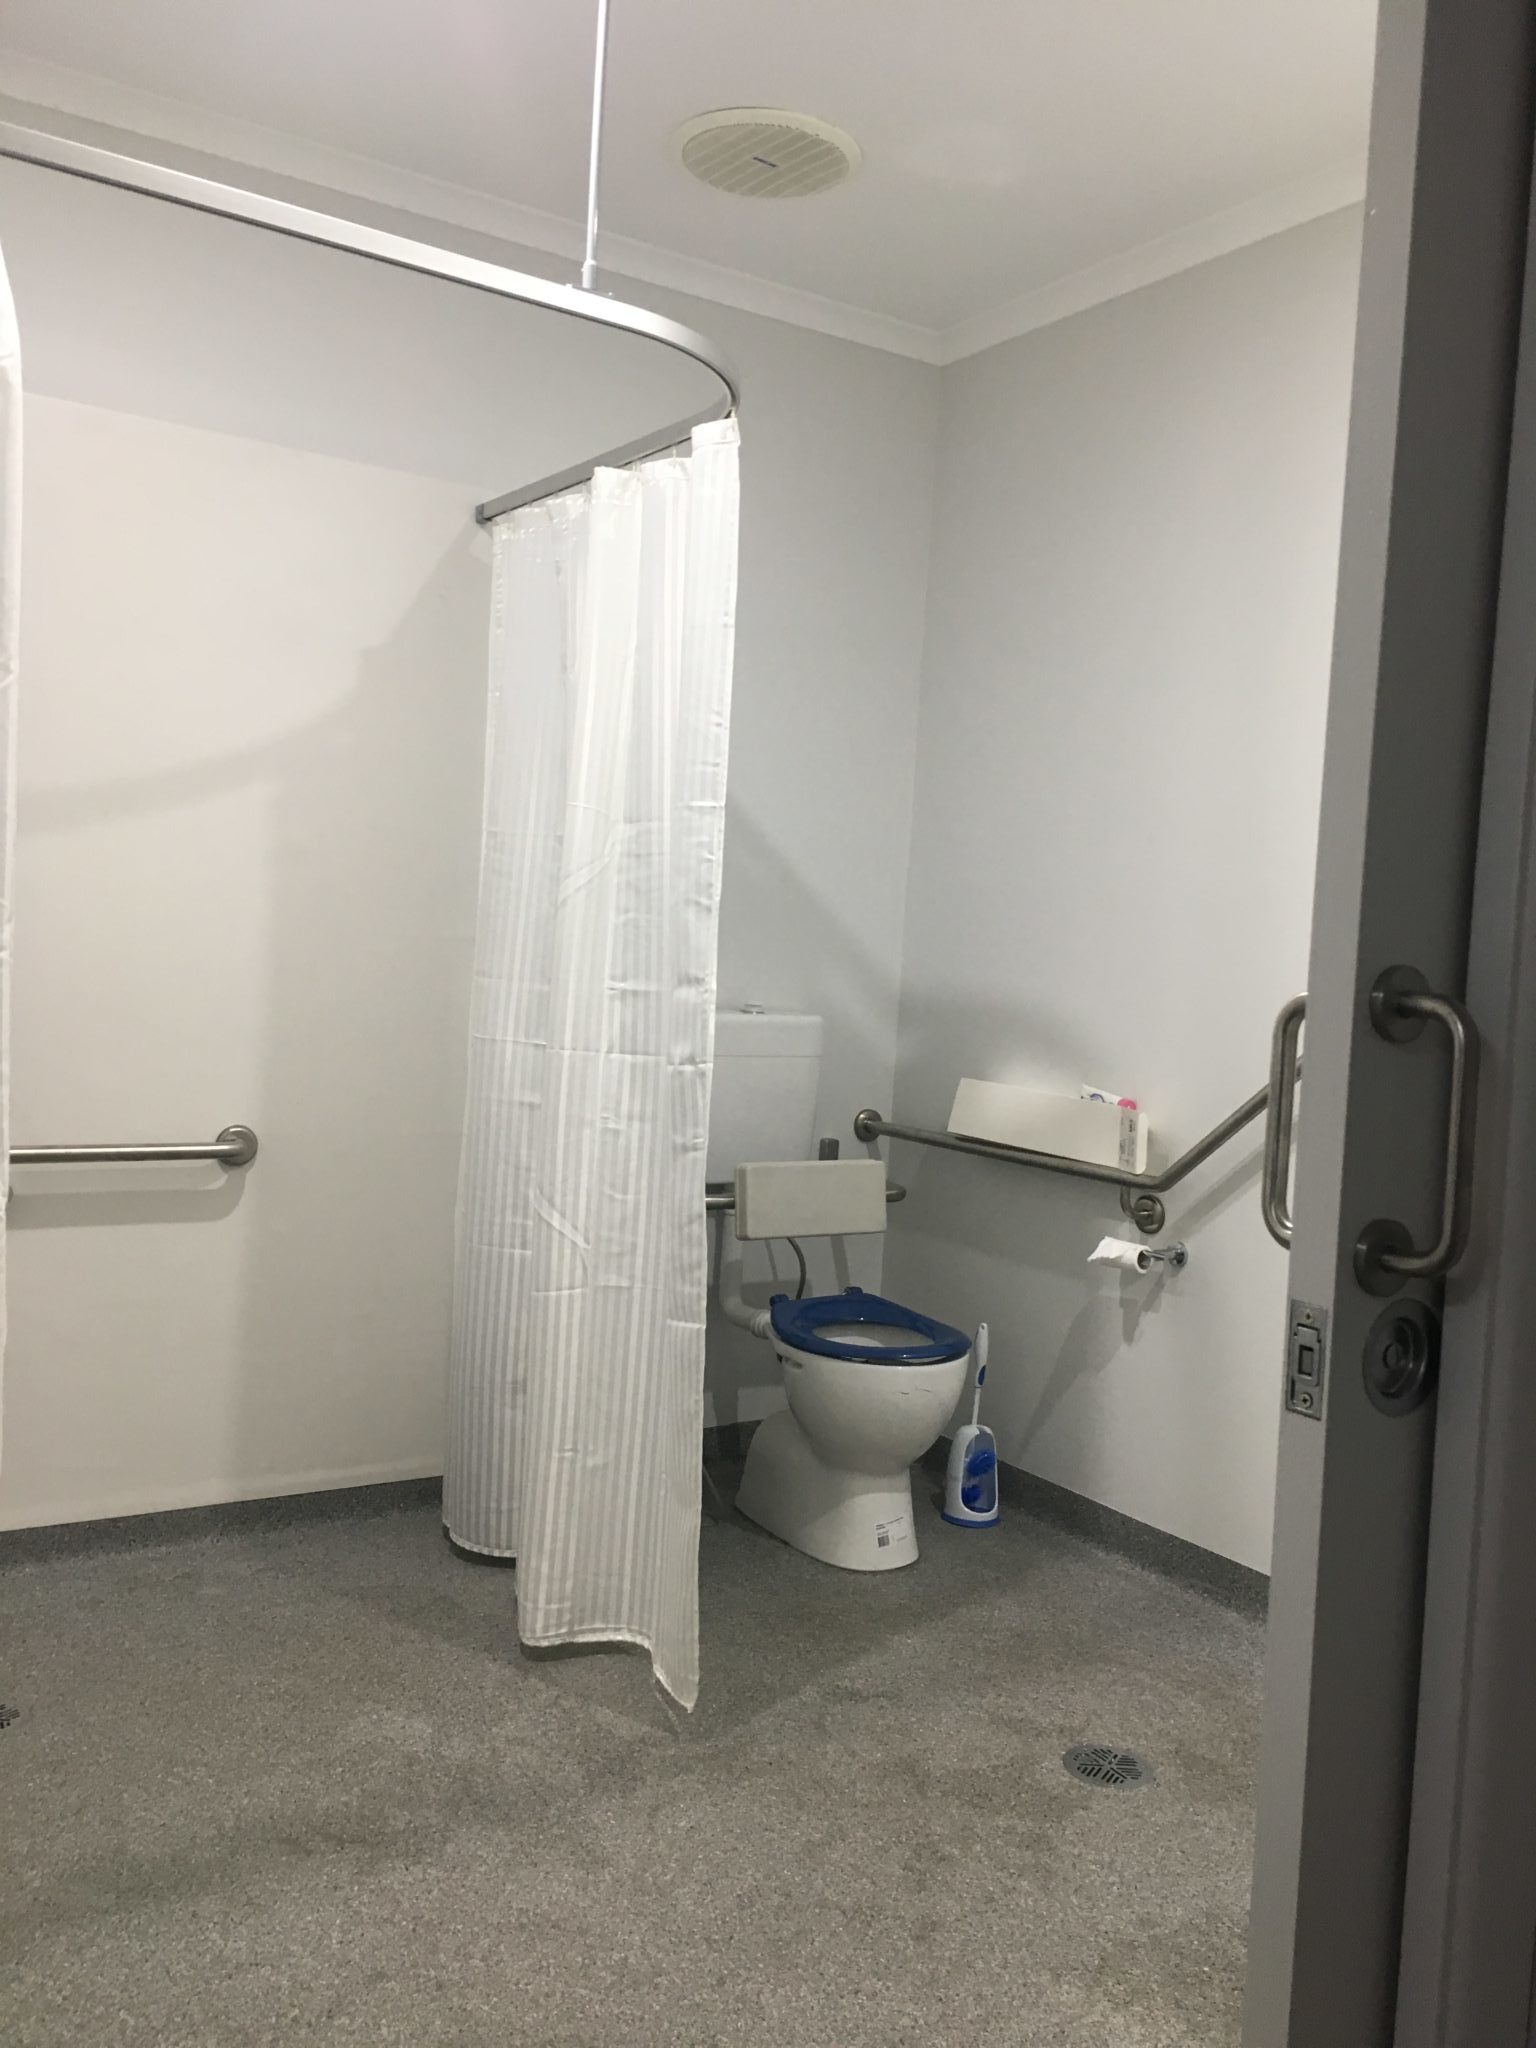 Accessible Bathroom Renovation